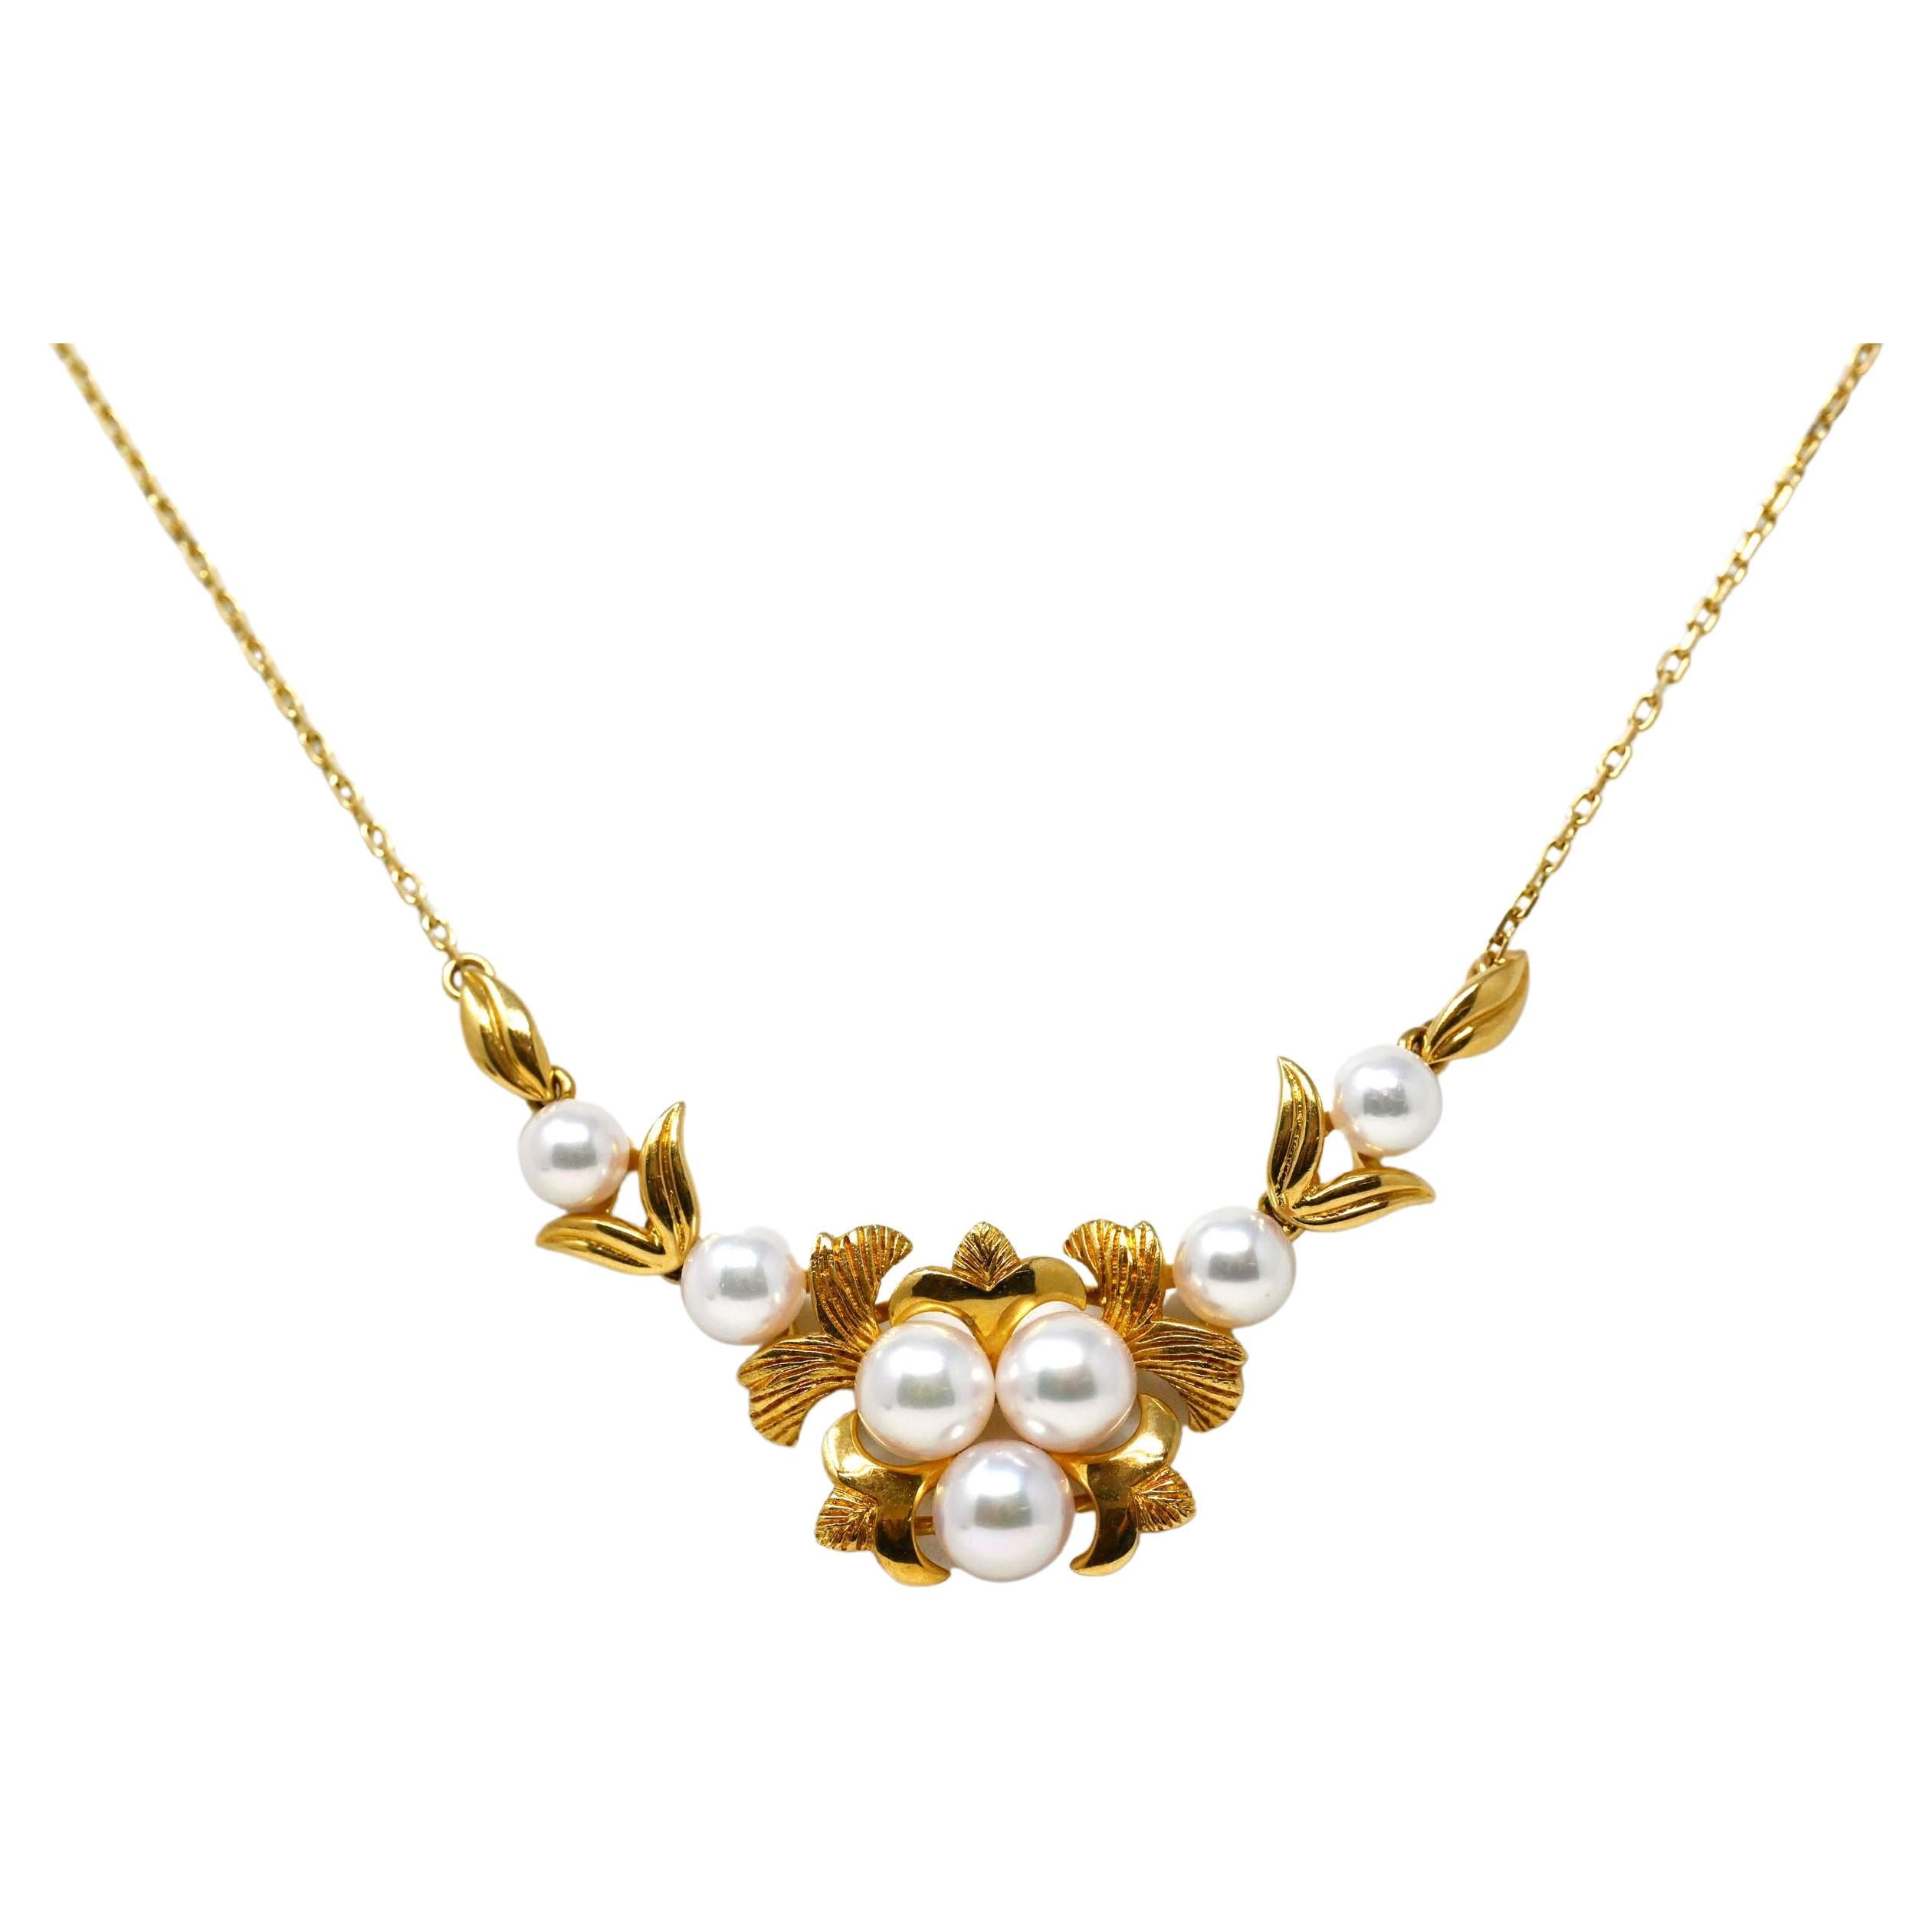 Collier vintage en or 18 carats avec perles de culture